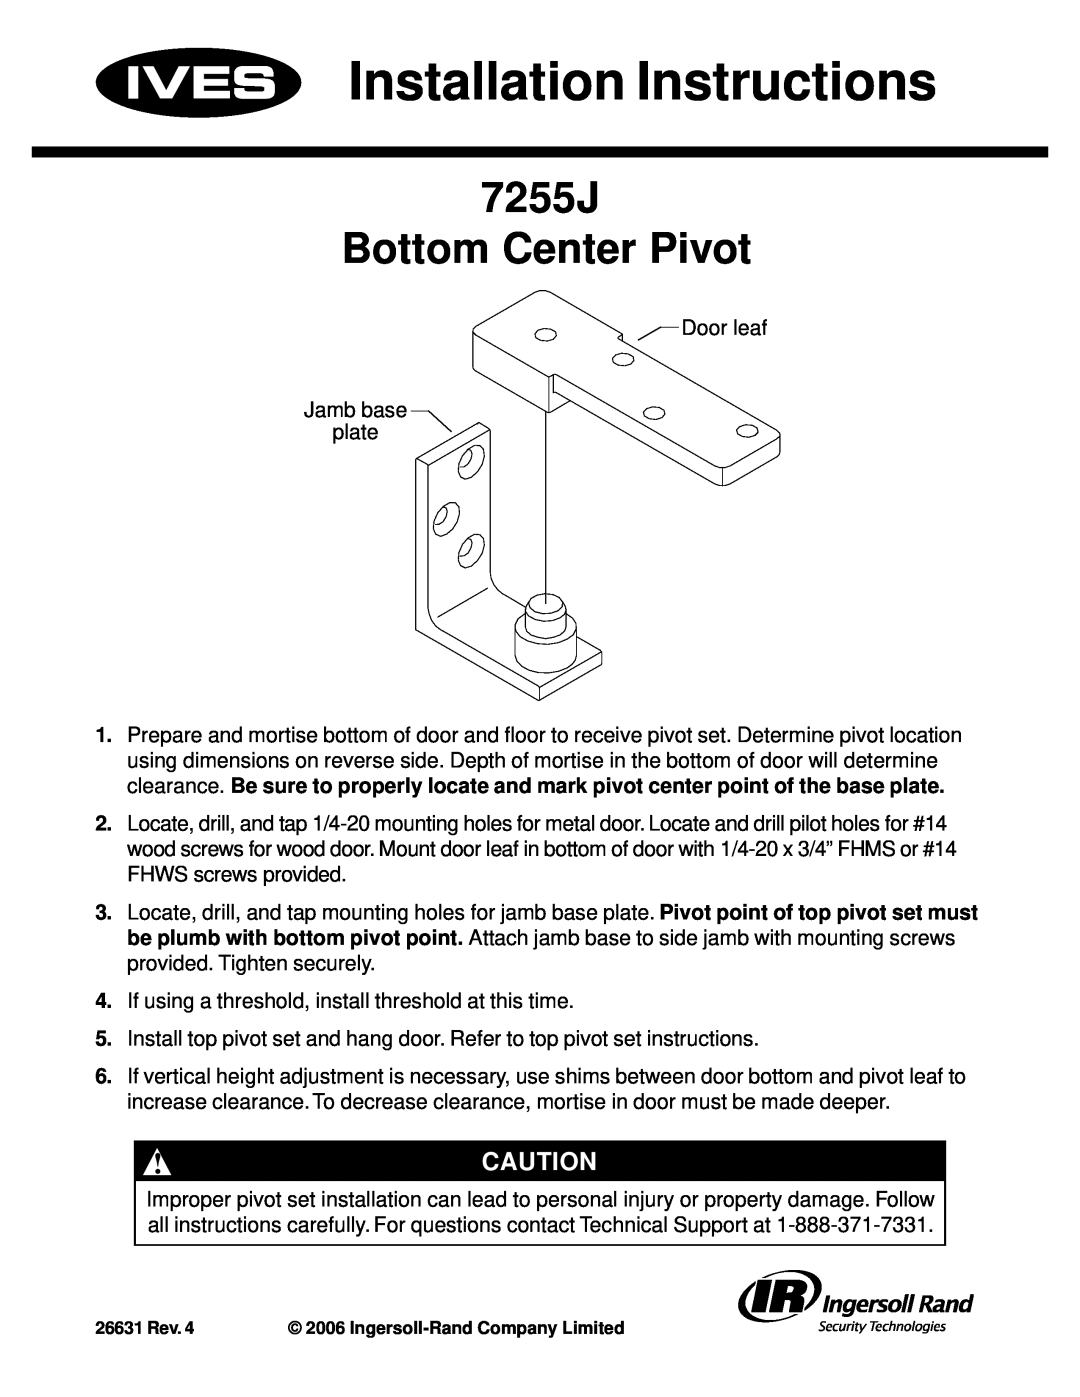 Ives installation instructions Installation Instructions, 7255J Bottom Center Pivot 